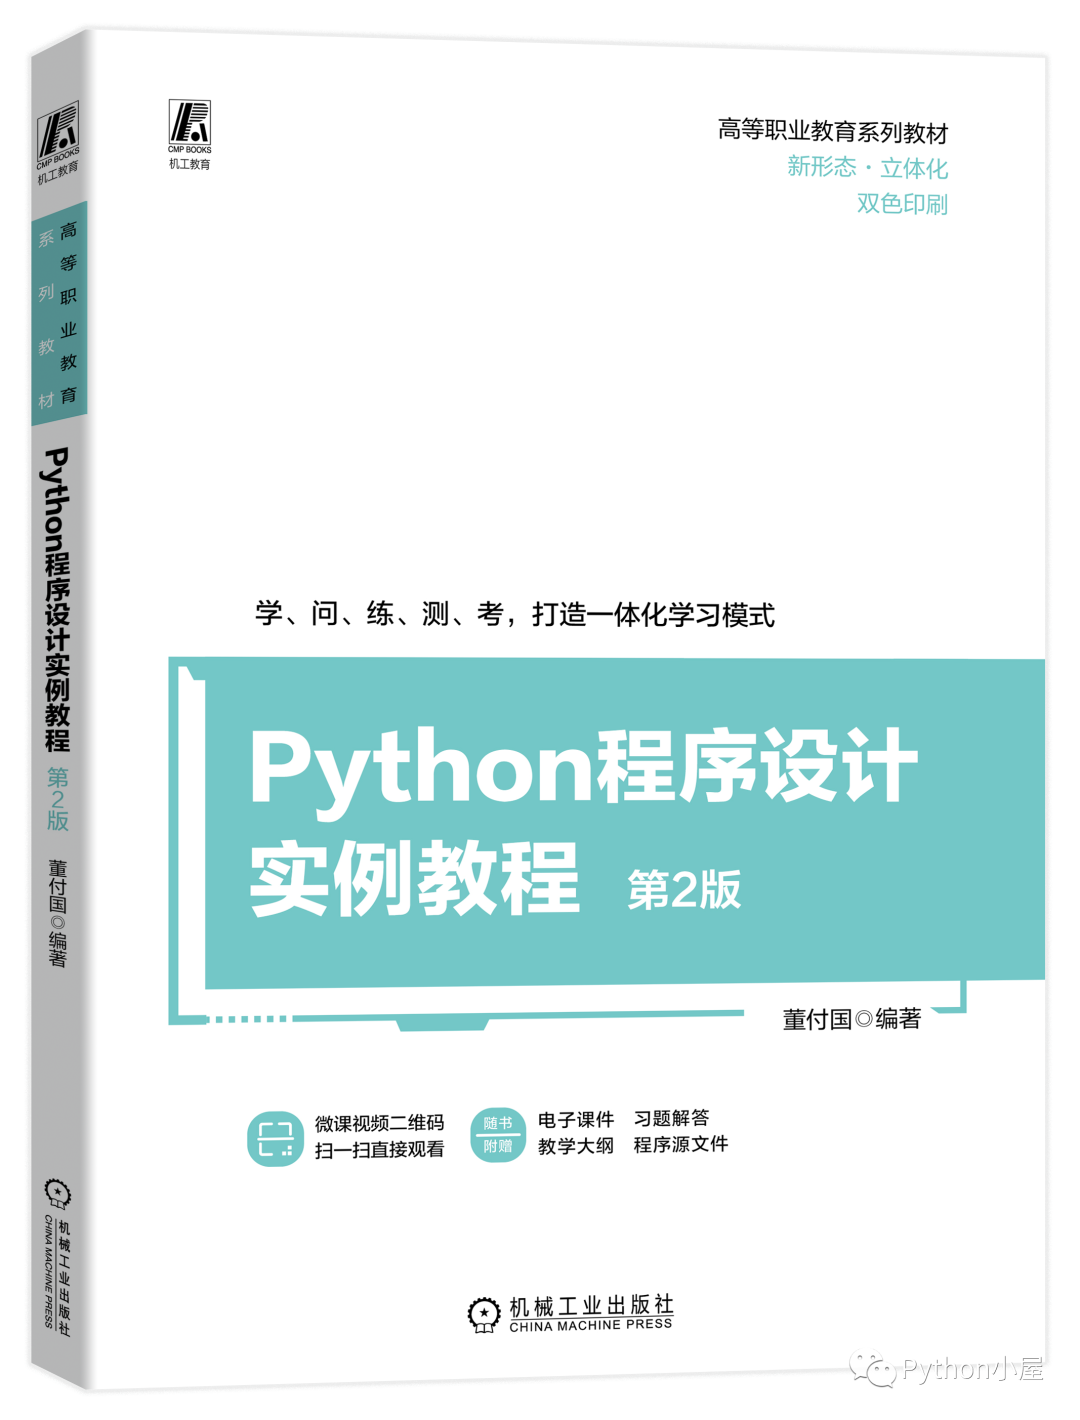 董老师又双叒叕送书啦，6本《Python程序设计实例教程（第2版）》_Python